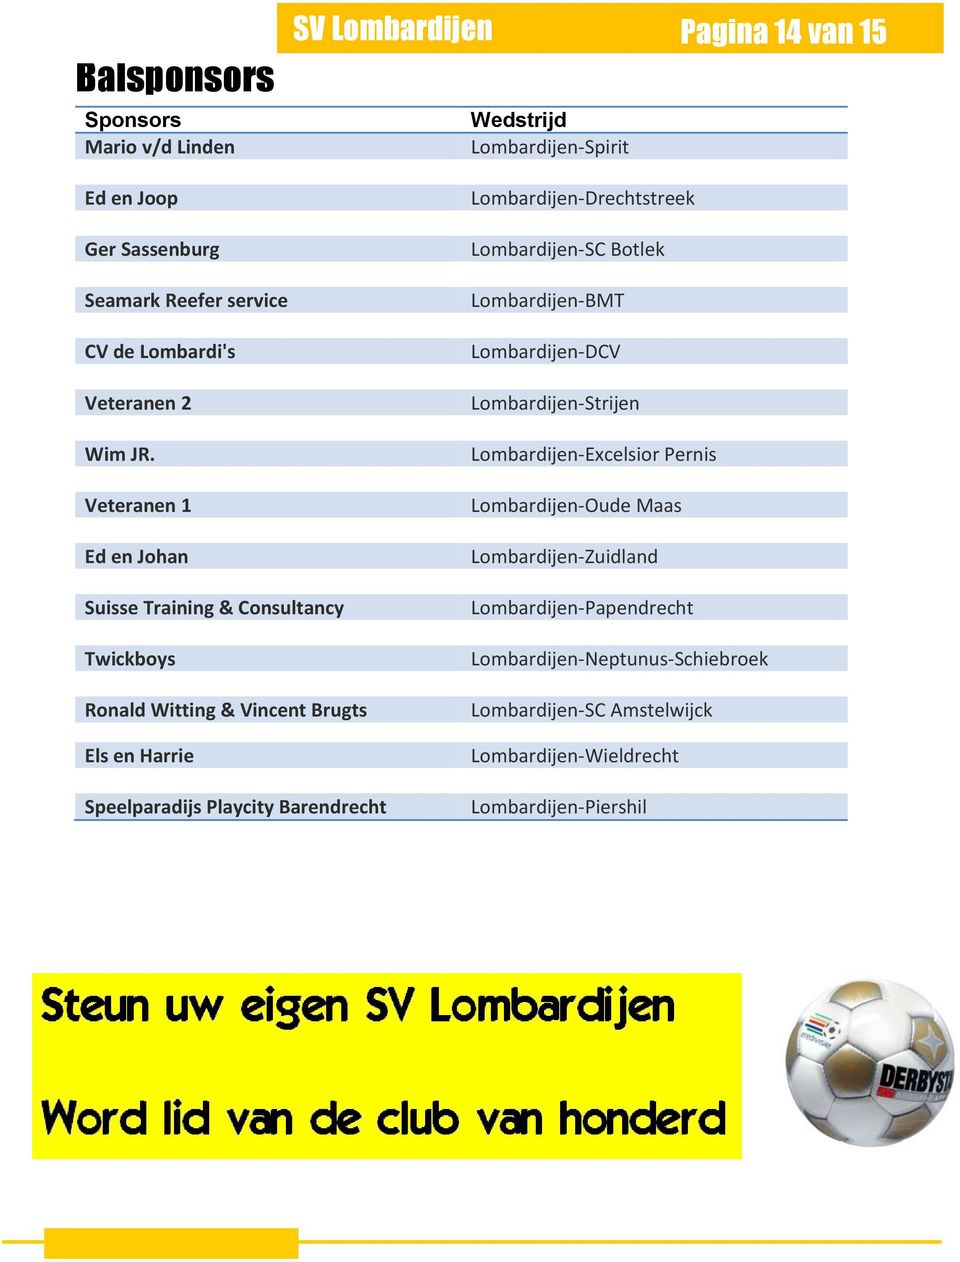 Lombardijen-Strijen Lombardijen-Excelsior Pernis Lombardijen-Oude Maas Lombardijen-Zuidland Suisse Training & Consultancy Twickboys Ronald Witting &